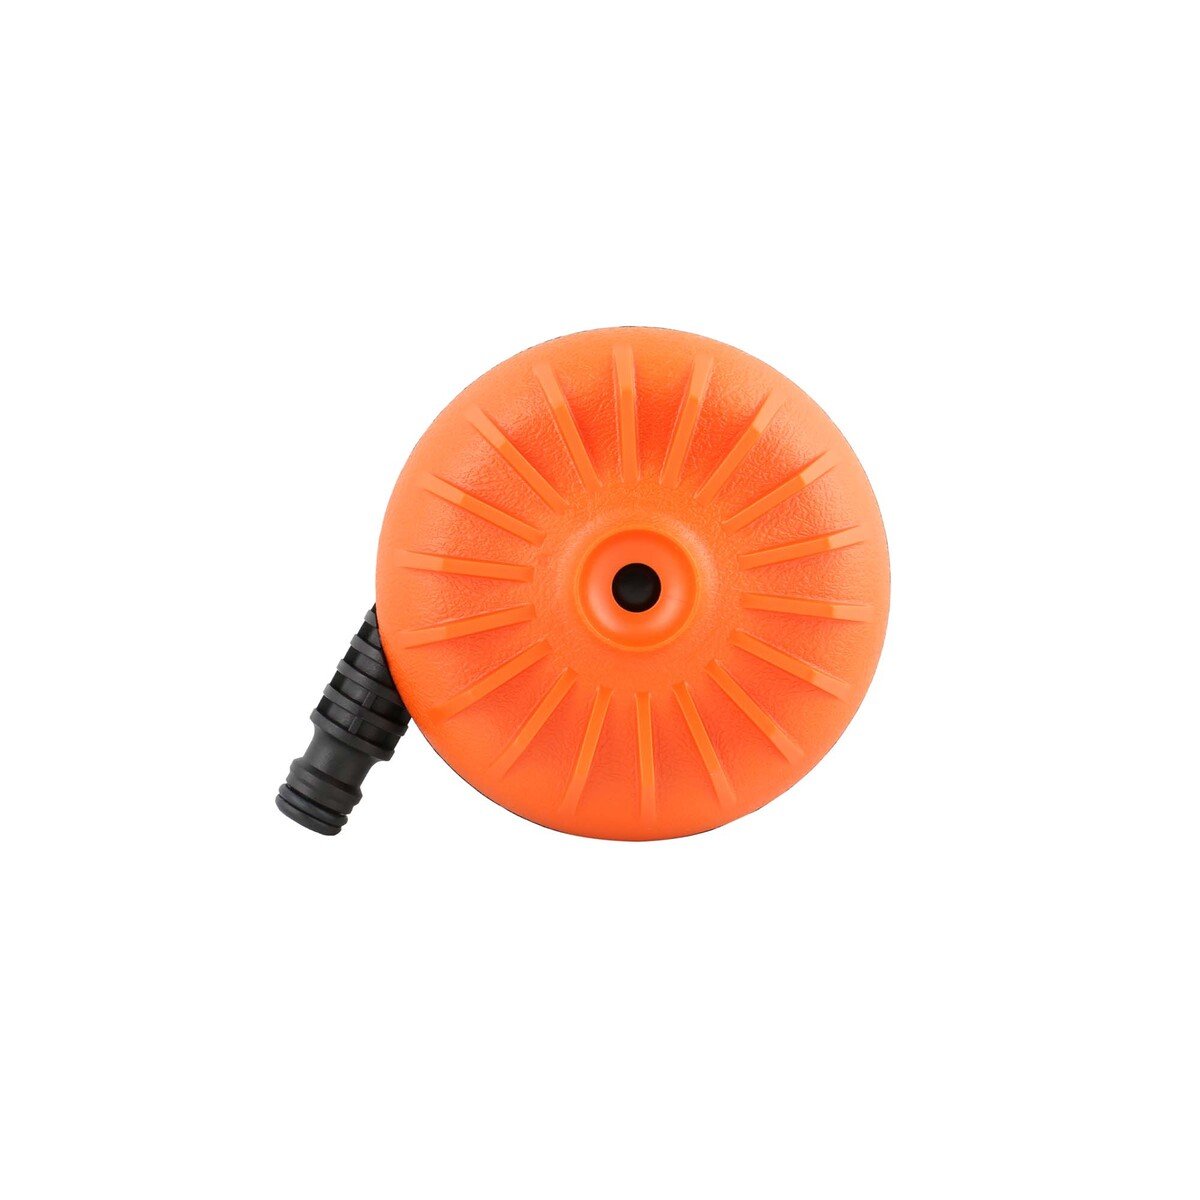 Claber Turbospruzzo sprinkler, Black/Orange, 8658